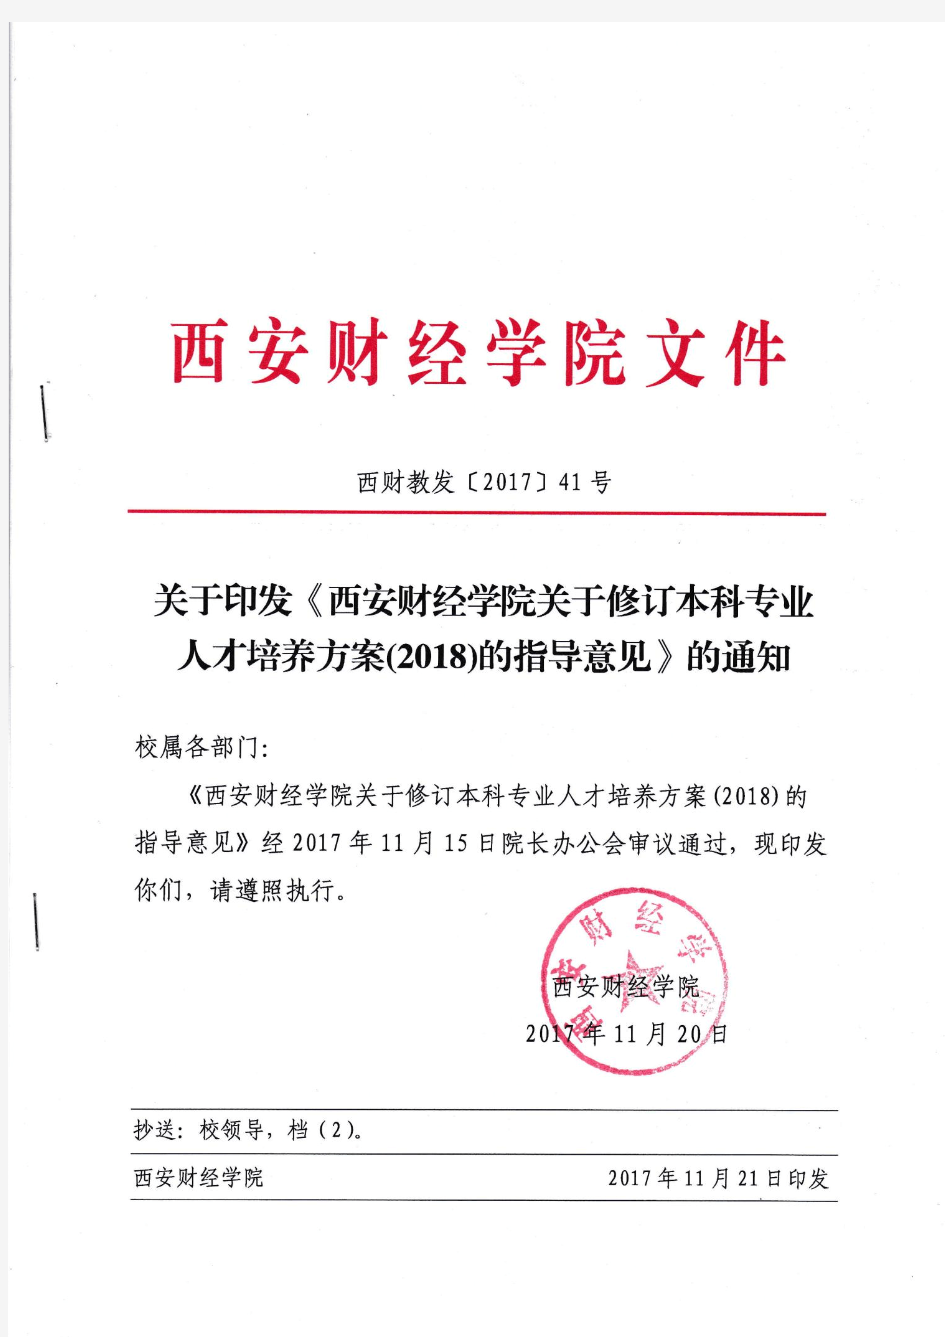 西安财经学院关于修订本科专业人才培养方案(2018)的指